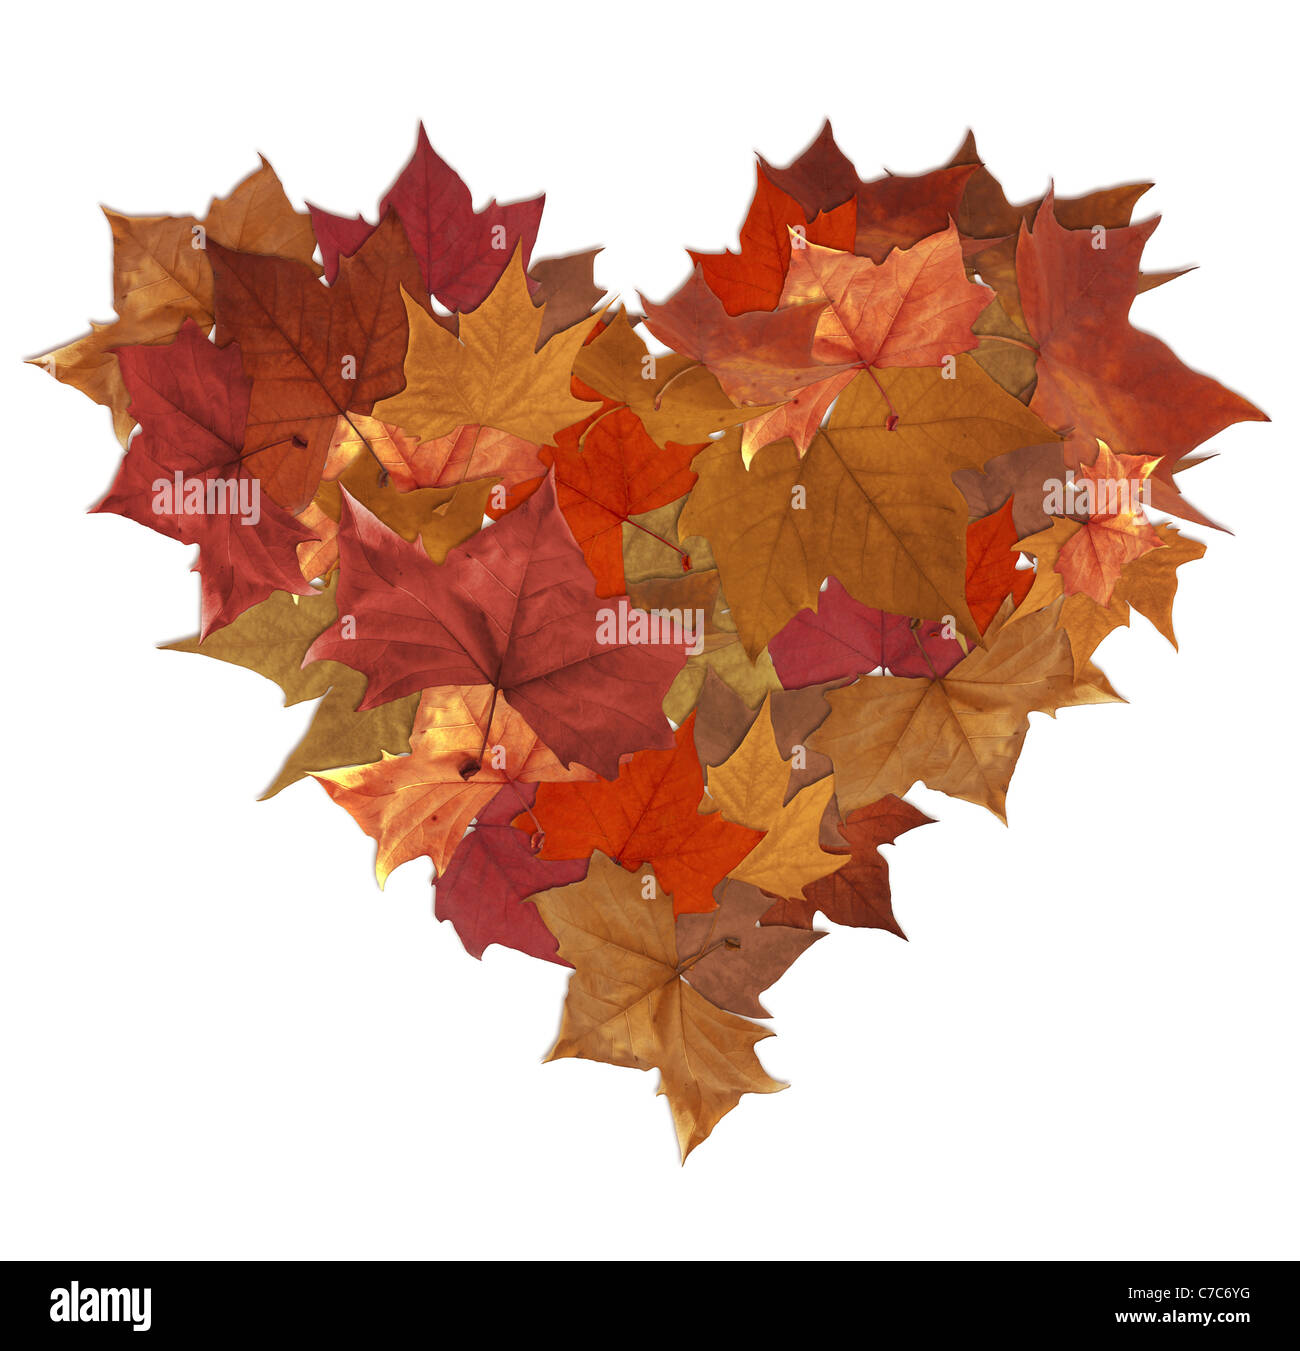 Feuille d'automne lot en forme de coeur sur fond blanc Banque D'Images